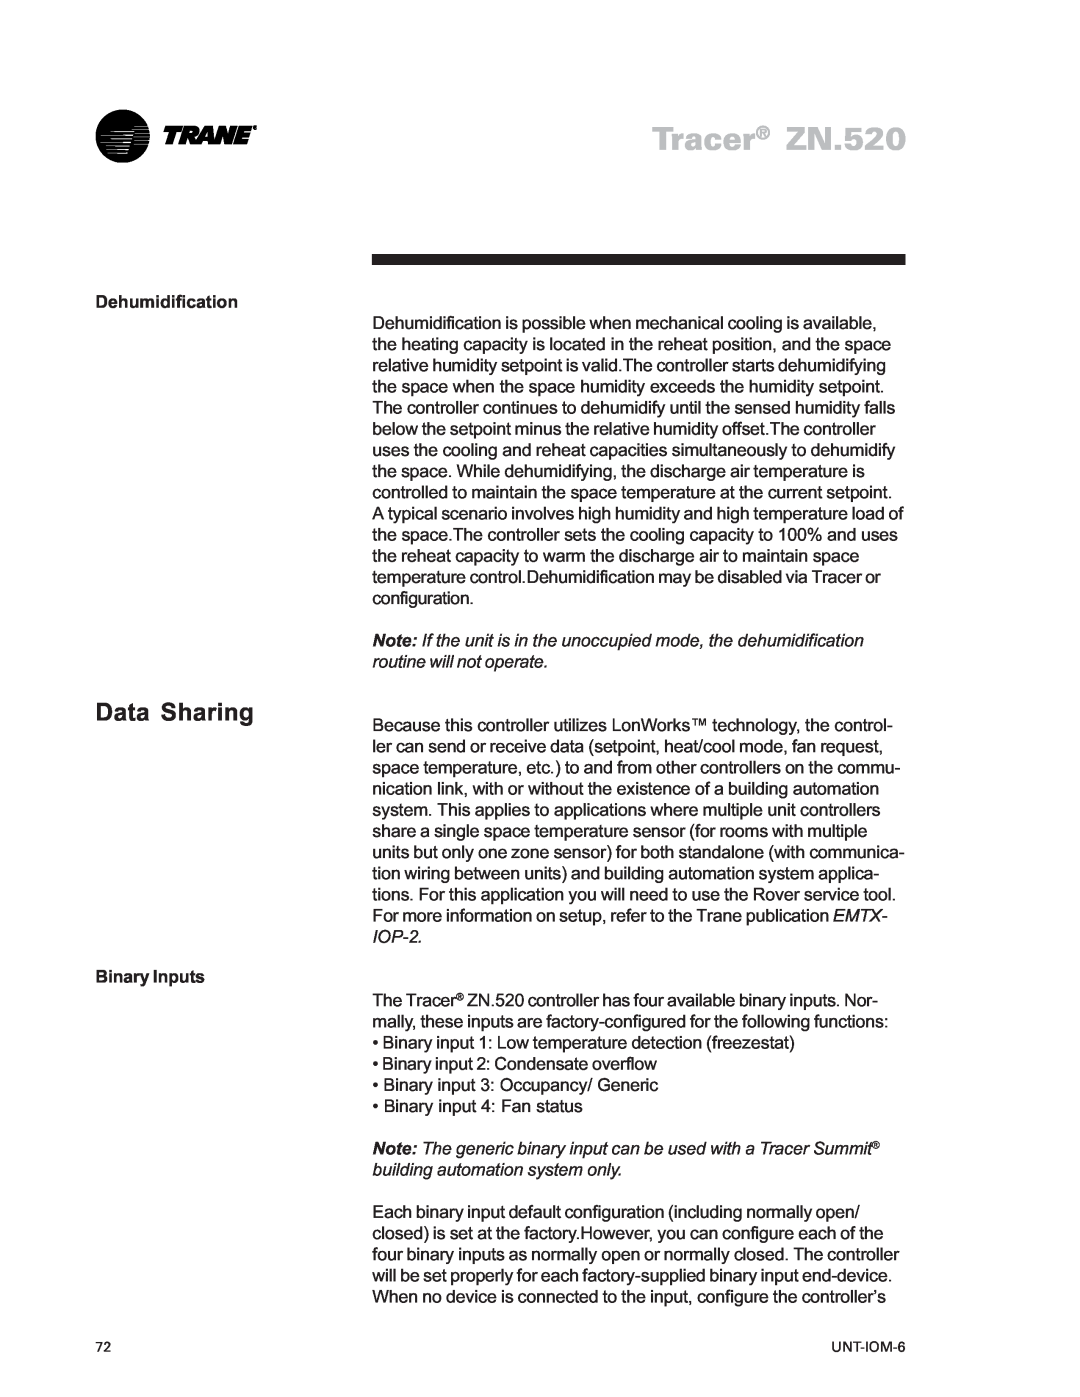 Trane LO manual Data Sharing, Tracer ZN.520, Dehumidification, Binary Inputs 